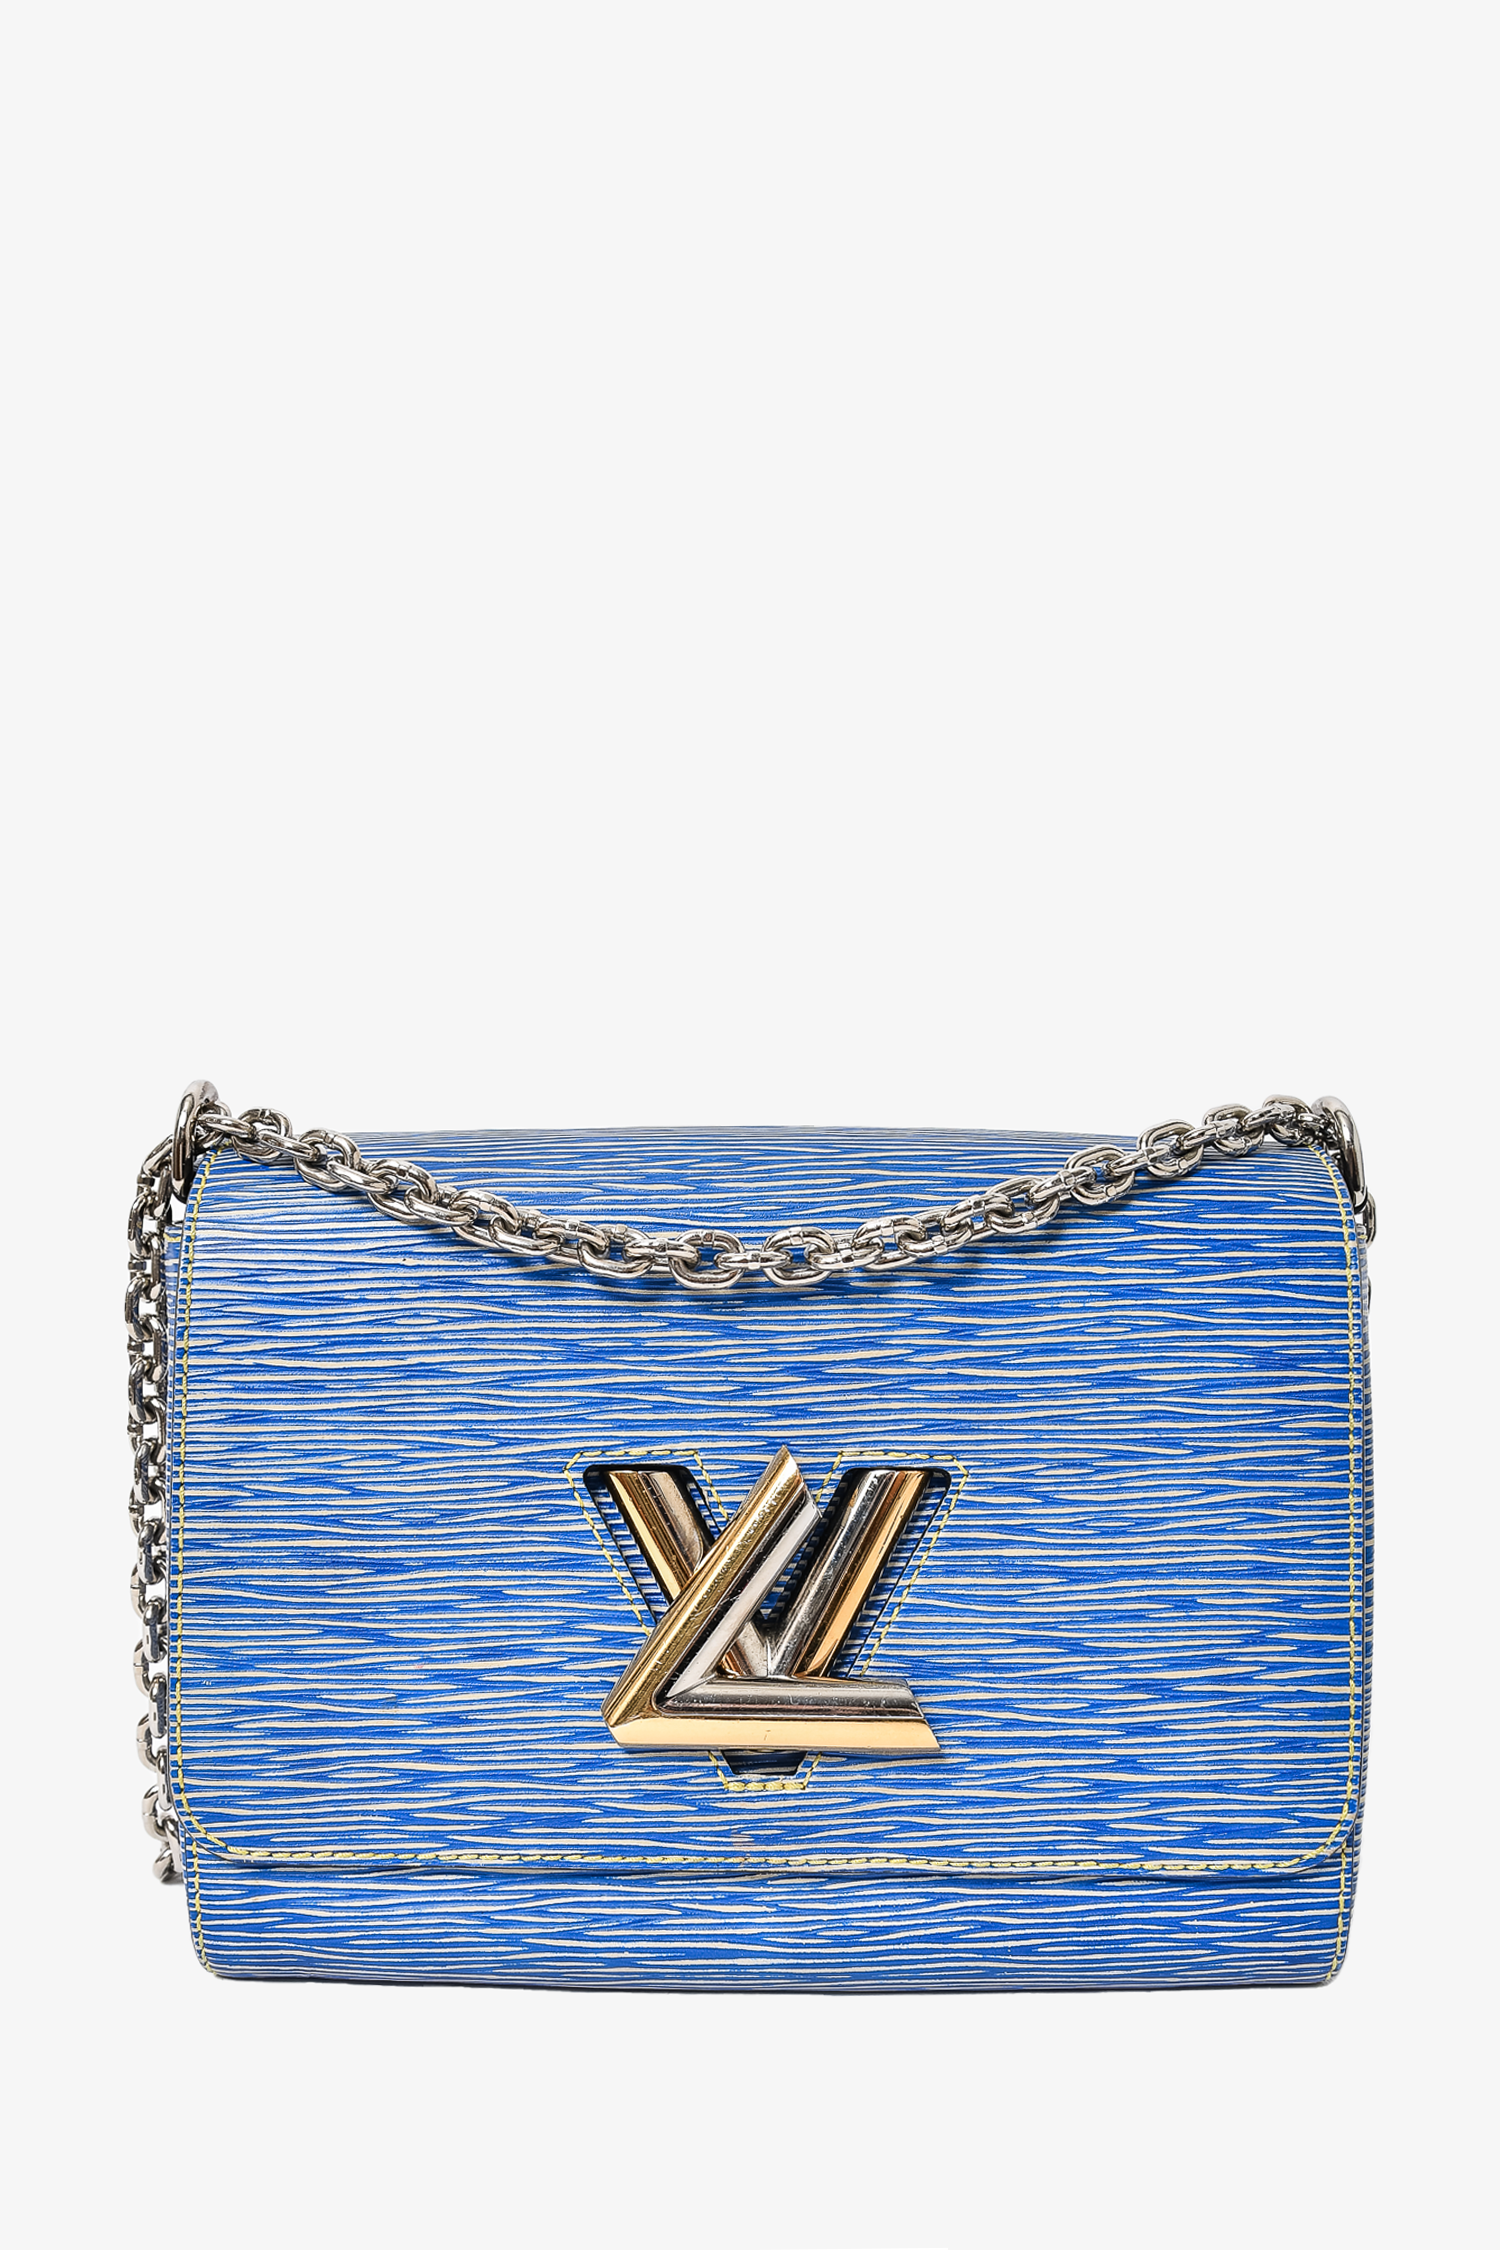 Louis Vuitton Blue Denim Epi Leather 'Twist' MM Shoulder Bag SHW